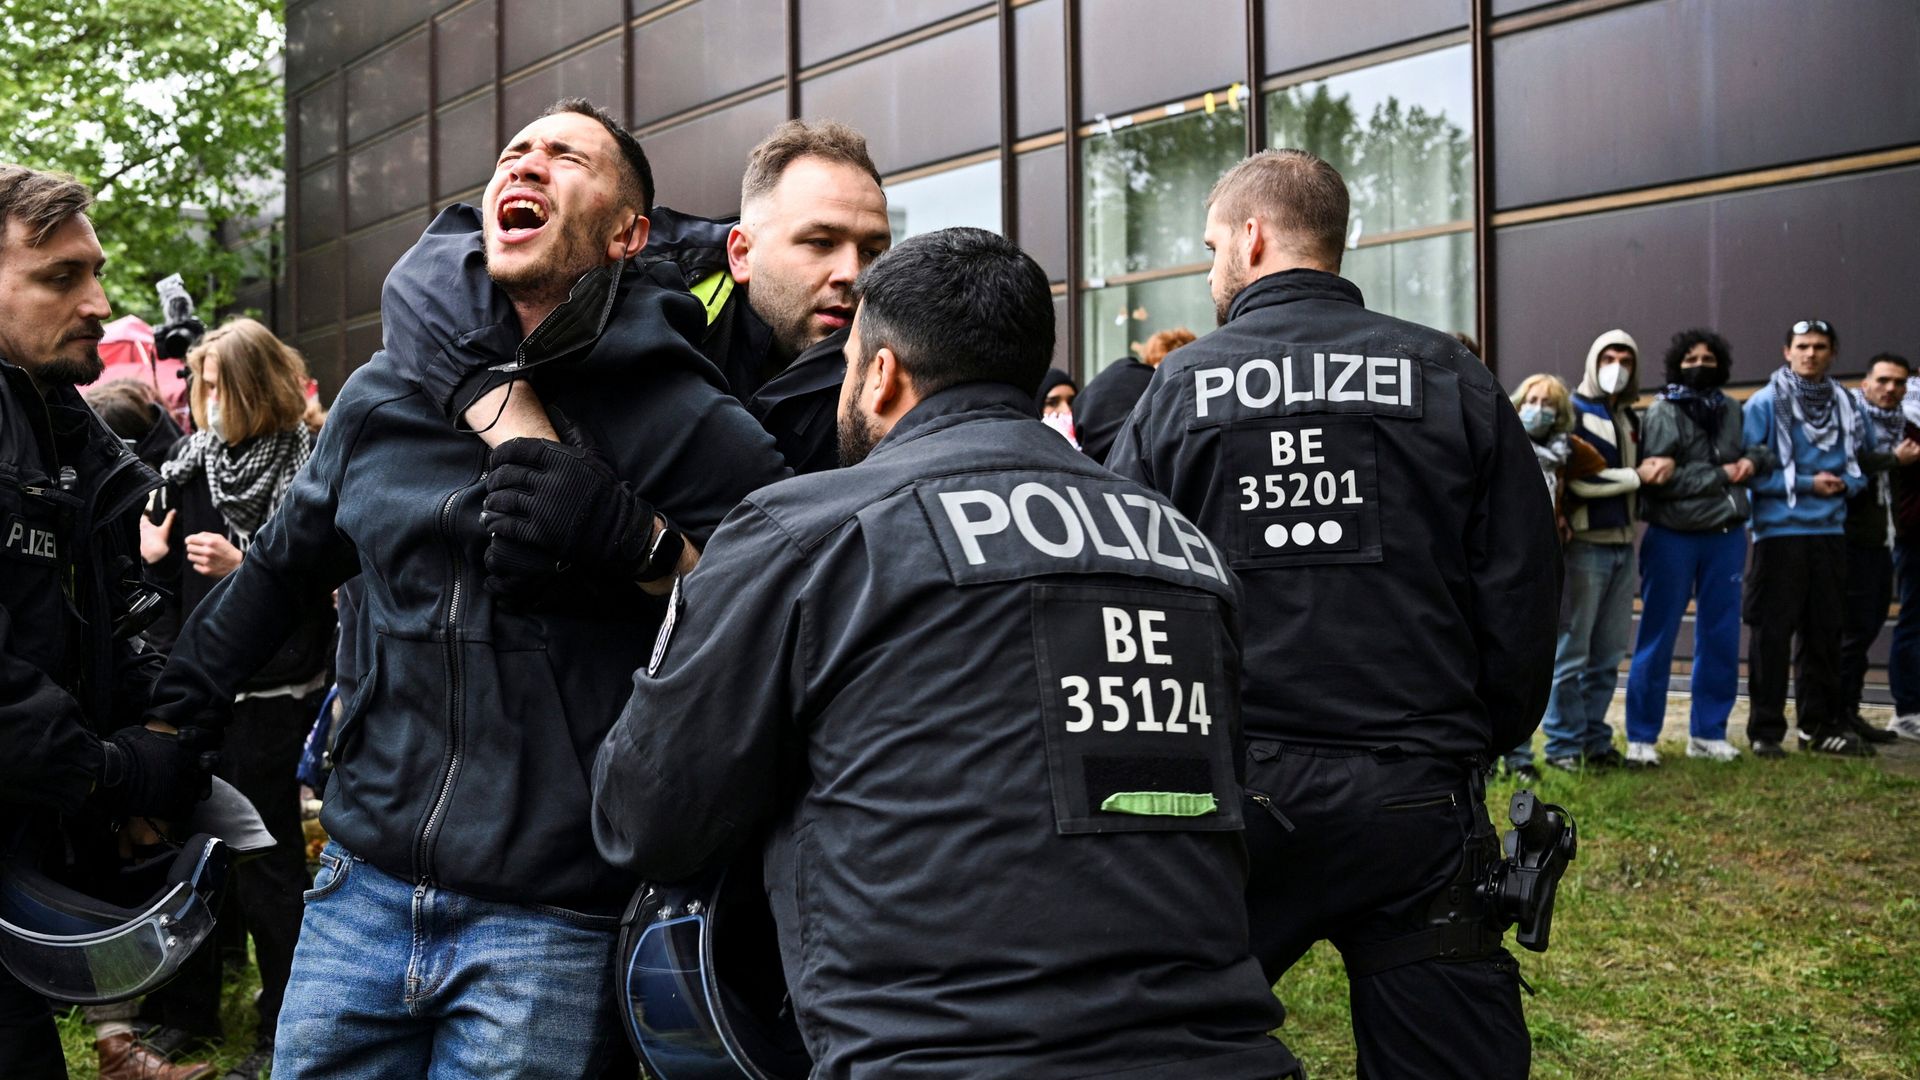 freie universität berlin: polizei räumt pro-palästina-camp – lehrbetrieb teilweise unterbrochen